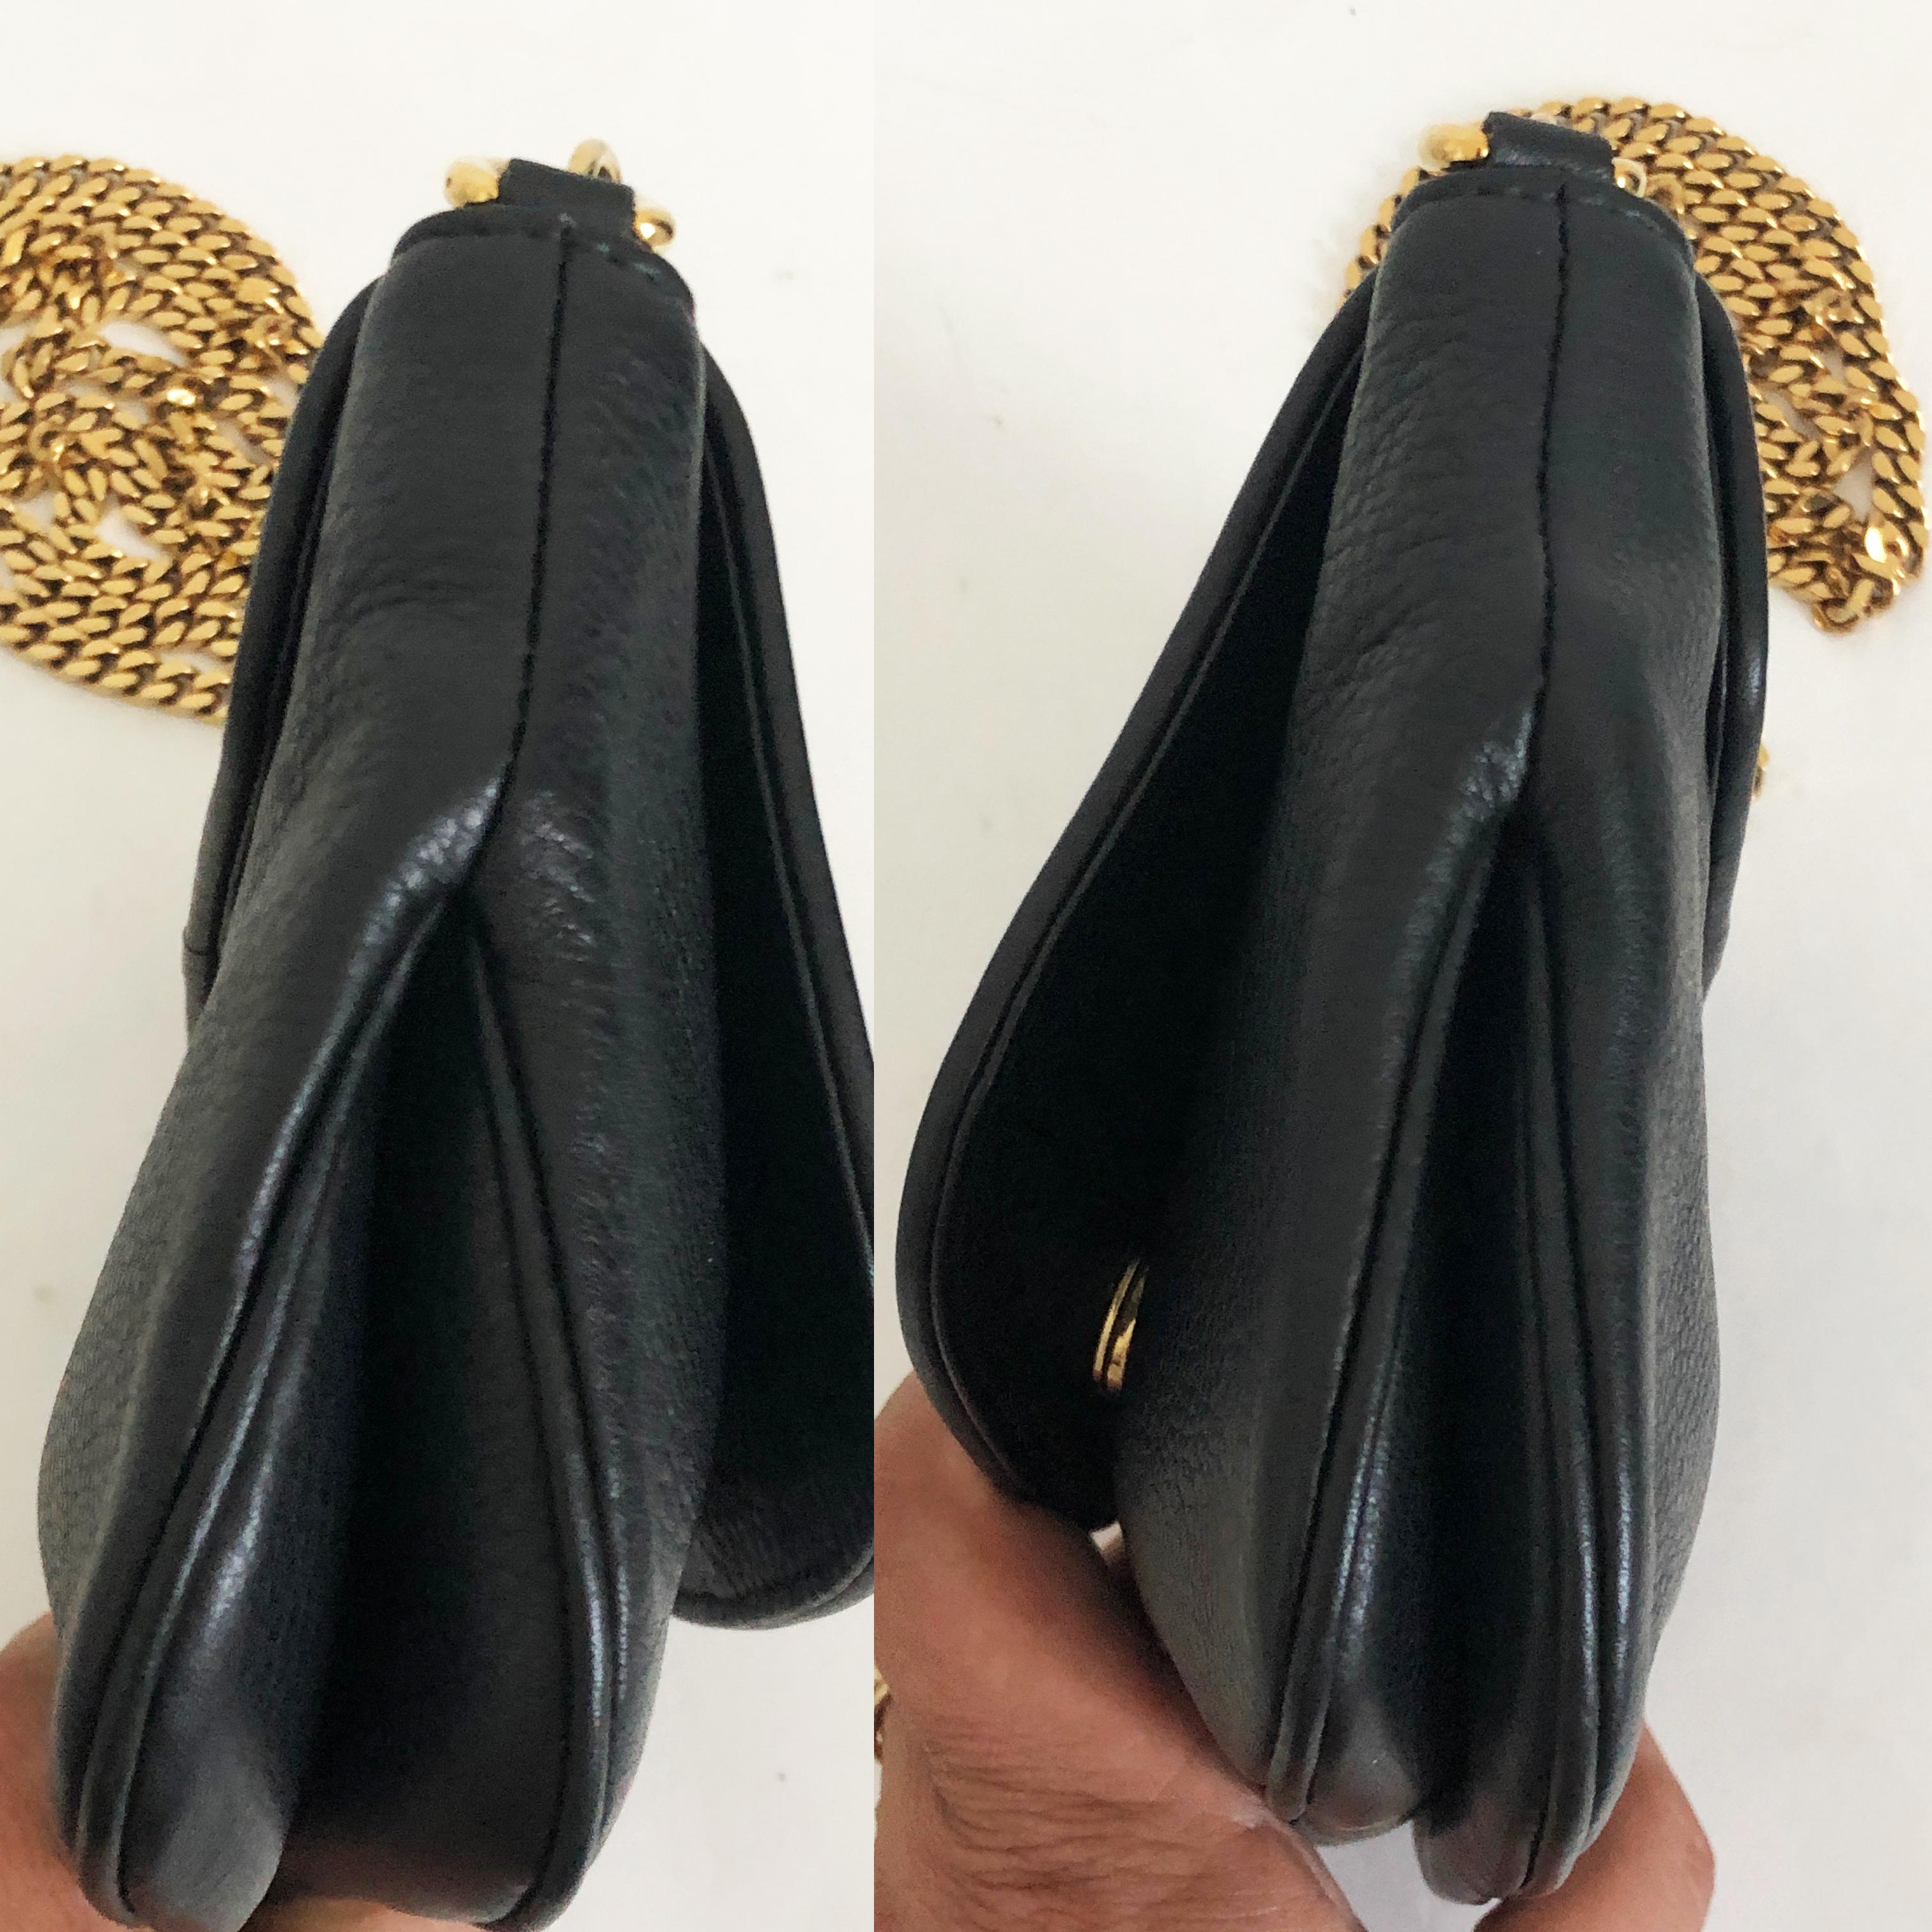  Gucci 1973 Shoulder Bag Black Pebbled Leather Messenger Bag NWOT Pour femmes 